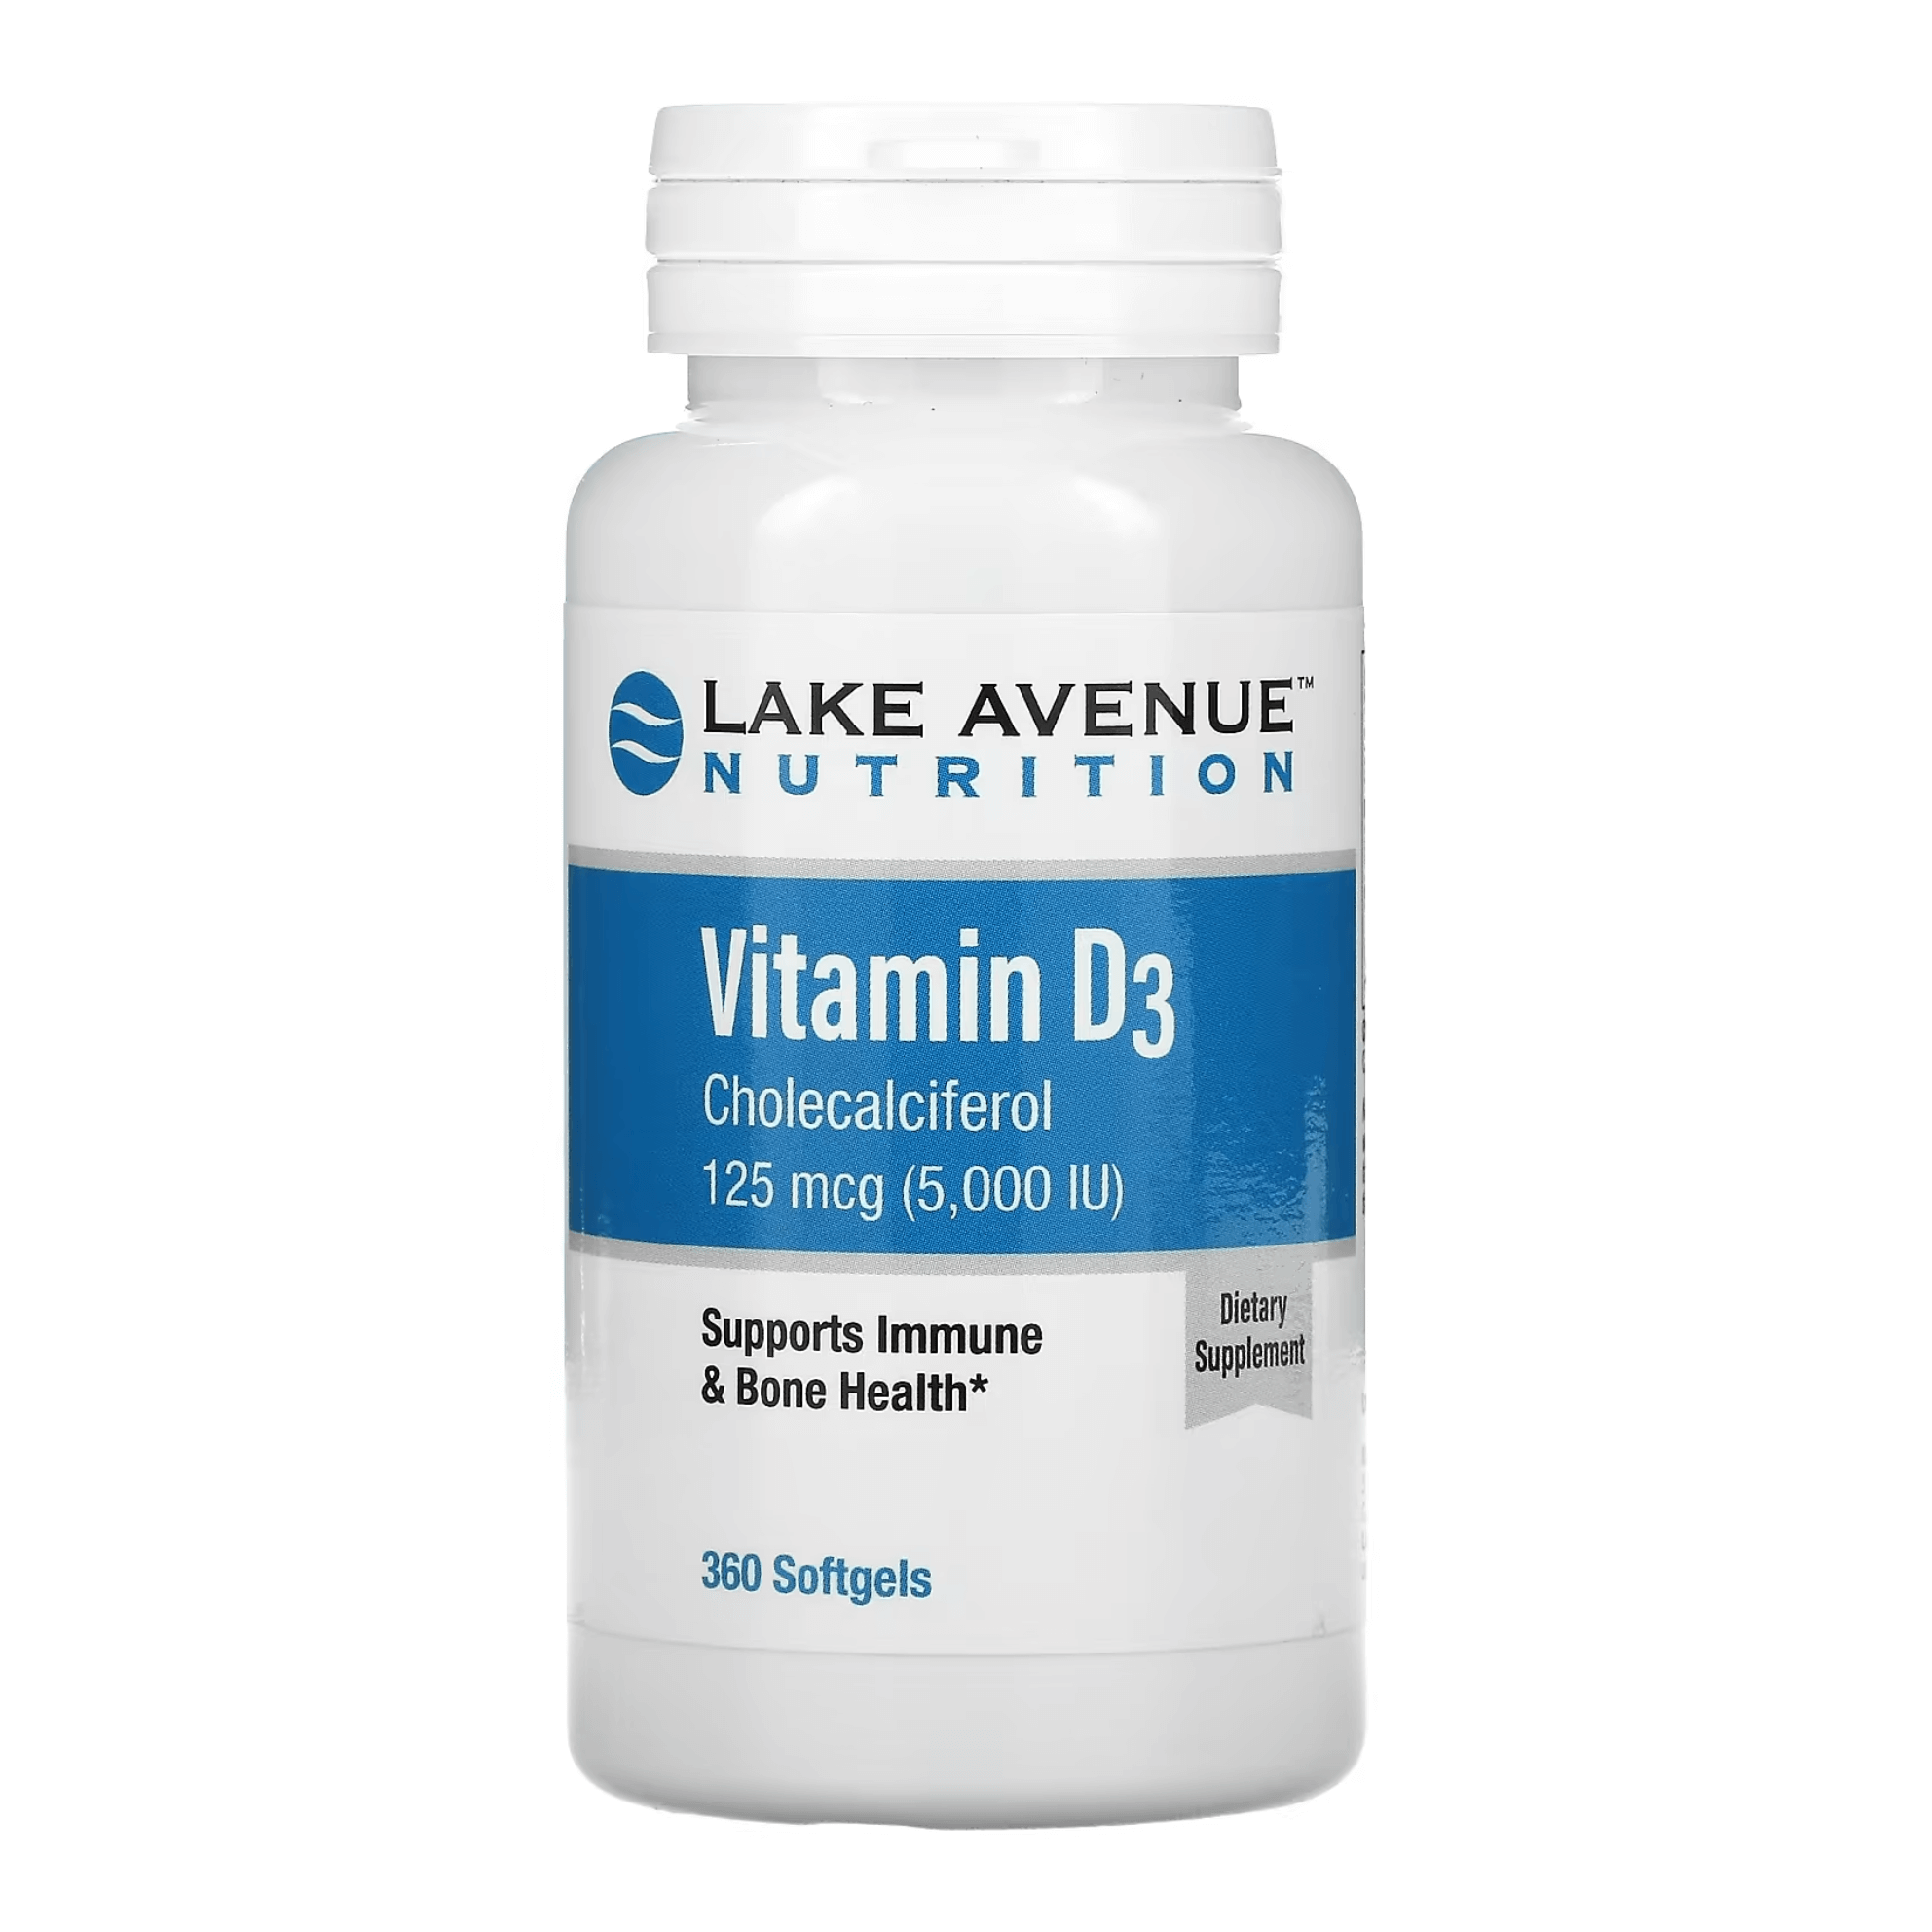 Витамин D3 Lake Avenue Nutrition, 125 мкг (5000 МЕ), 360 капсул витамин d3 125 мкг 5000 iu lake avenue nutrition 360 капсул препарат для костей зубов суставов иммунитета